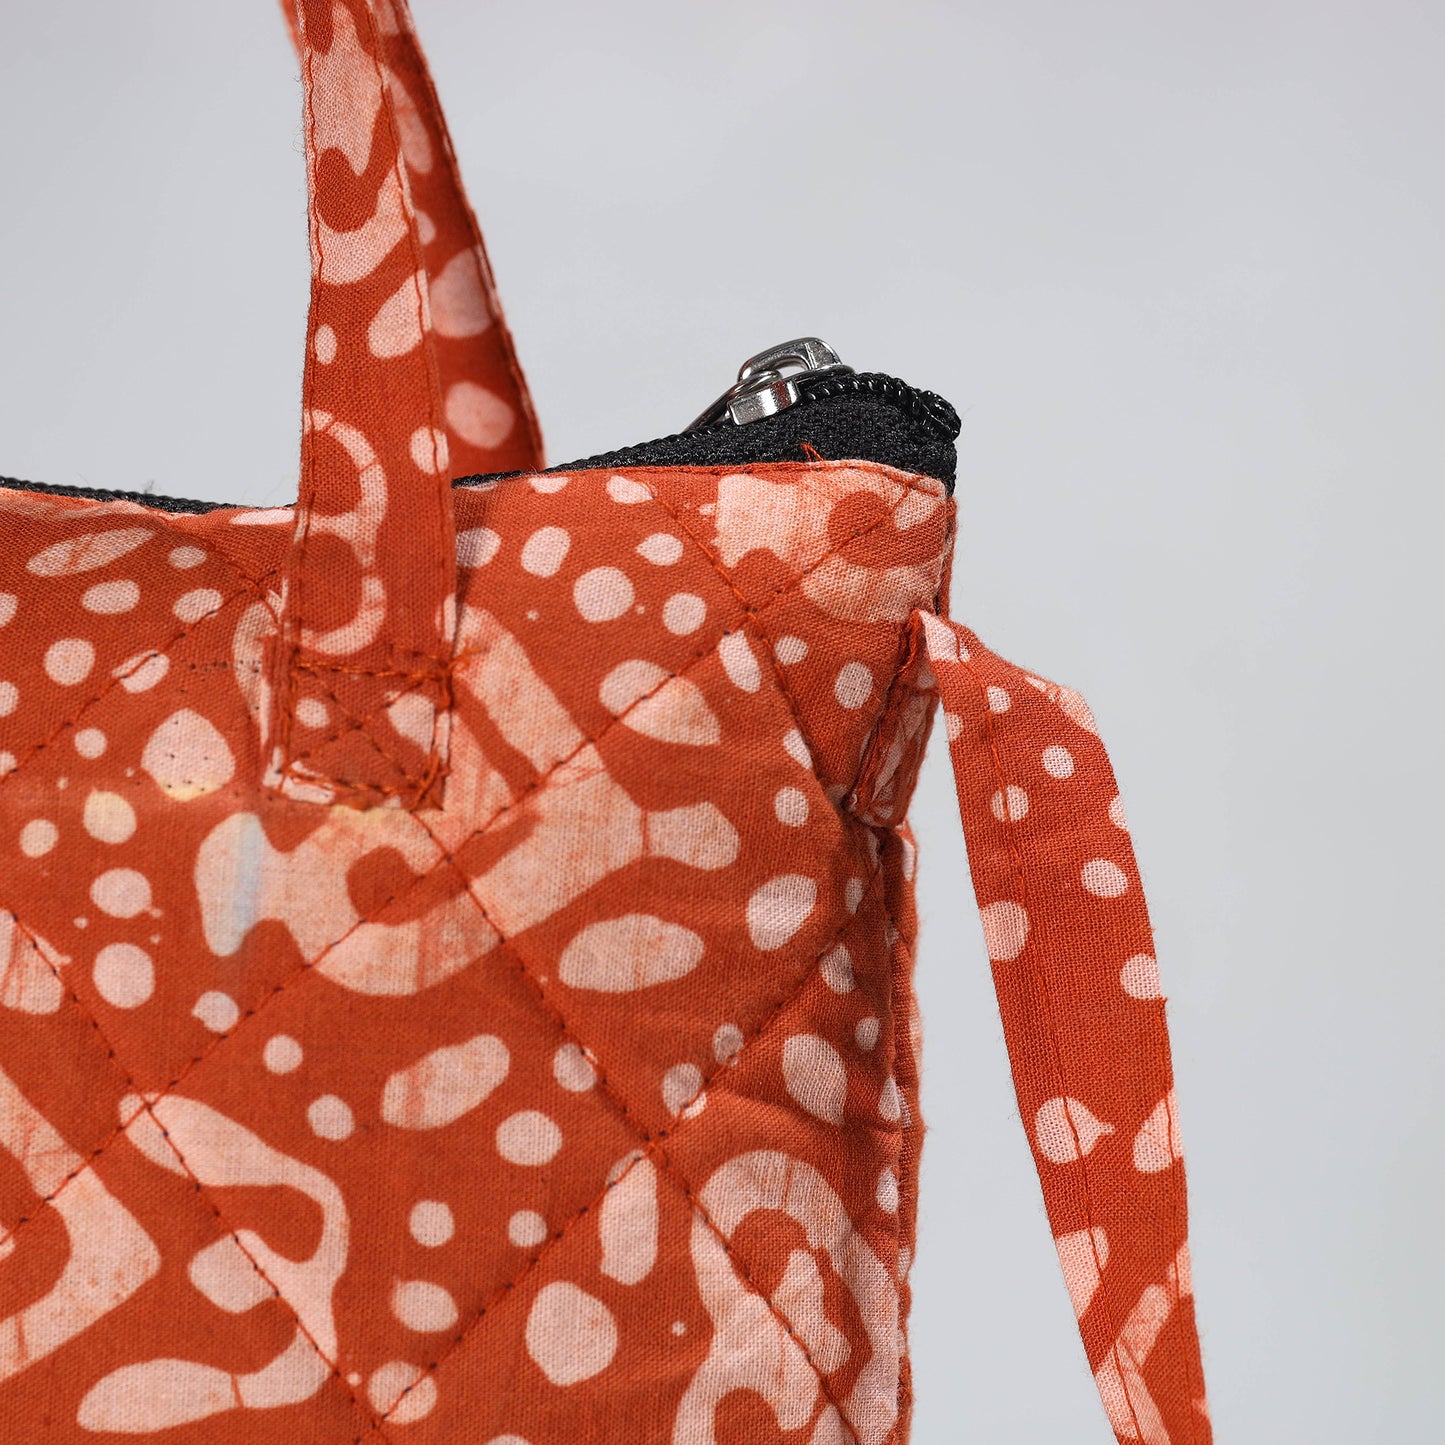 Orange - Hand Batik Printed Quilted Cotton Sling Bag 08